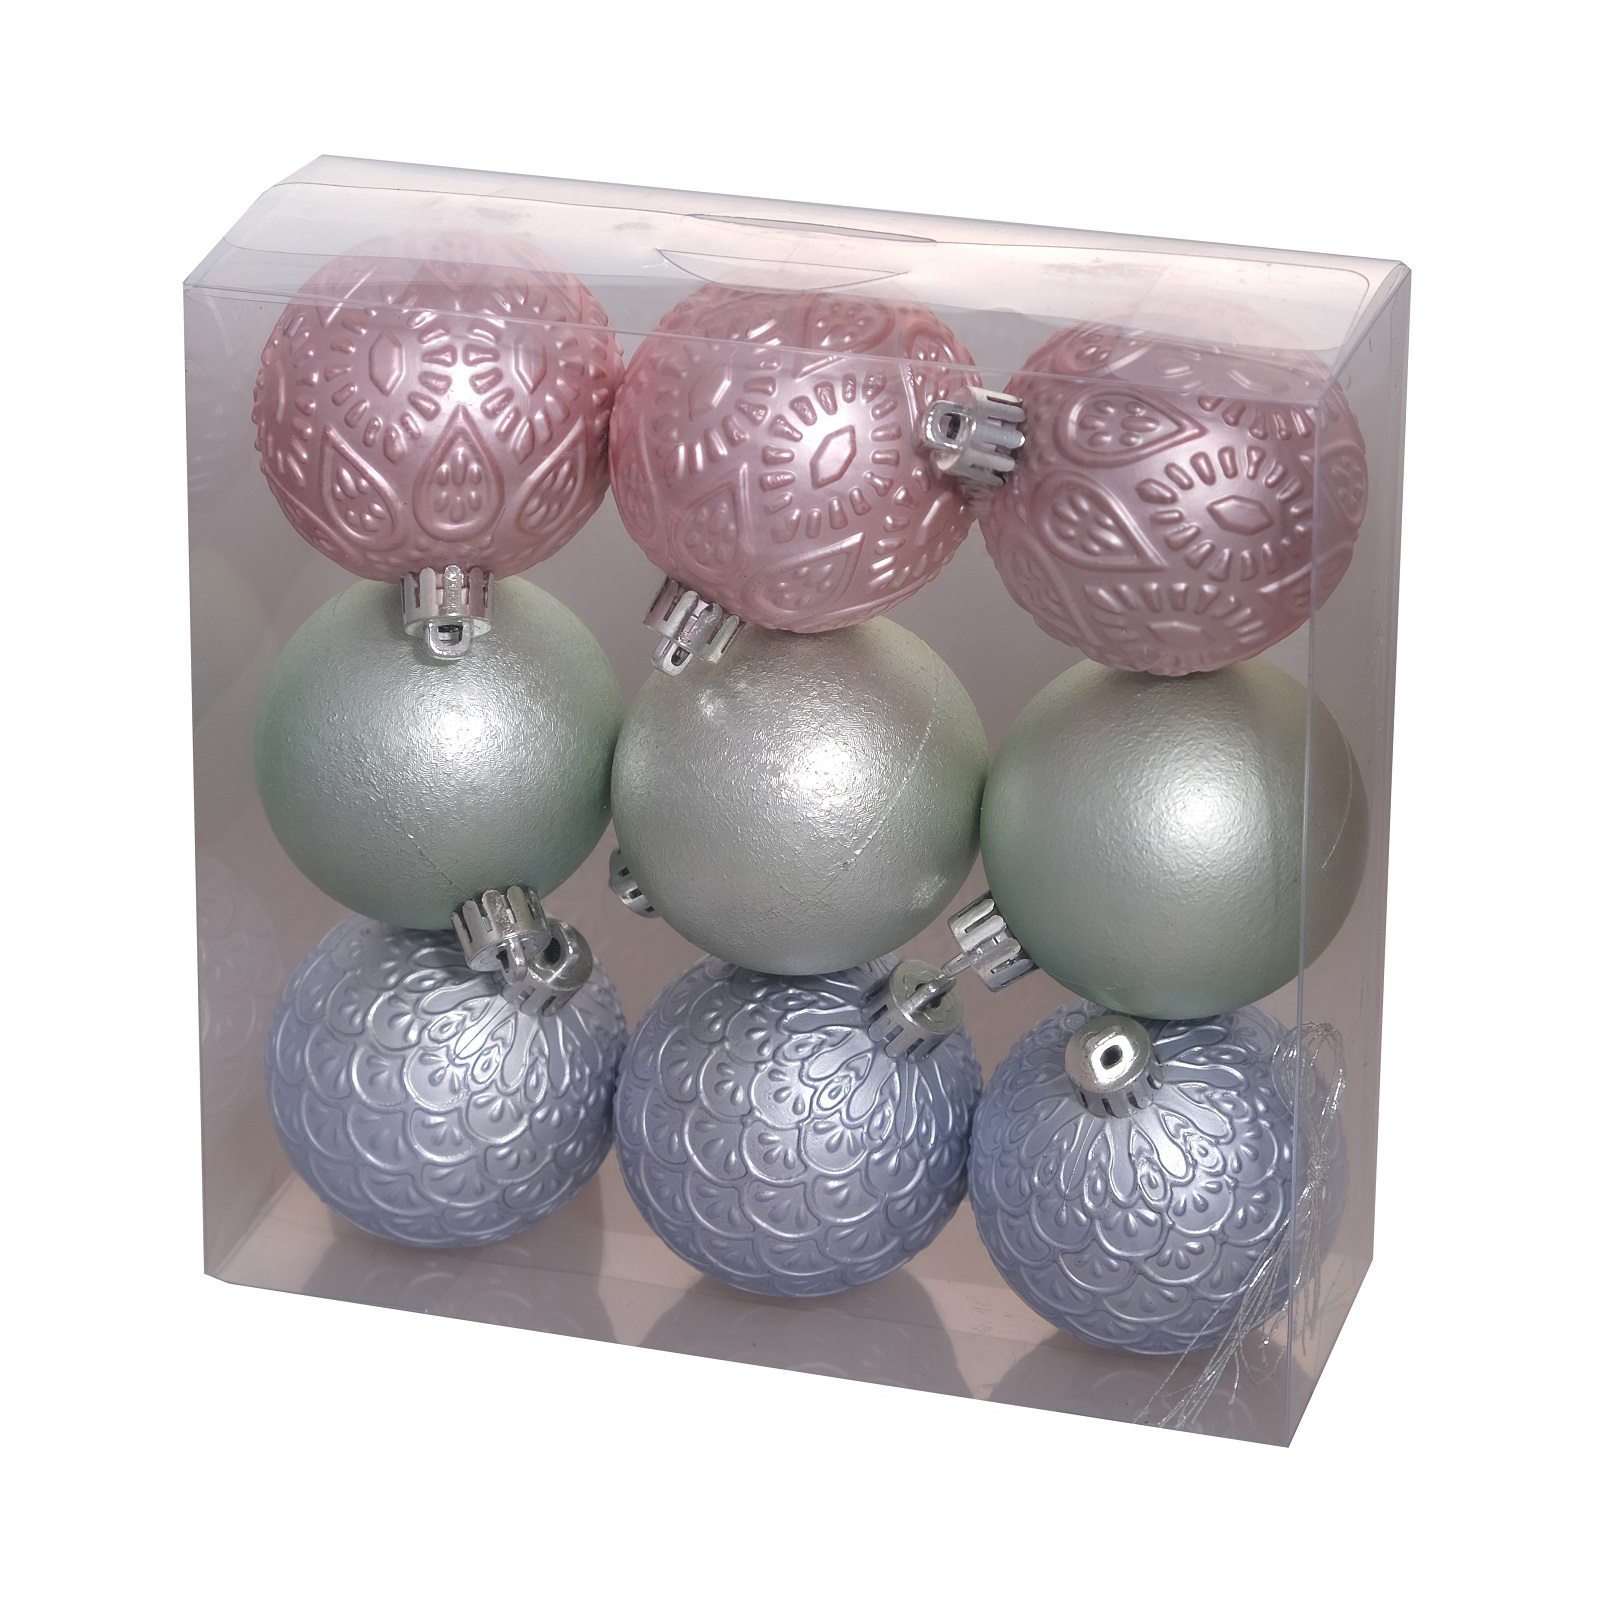 Ялинкова іграшка Chomik кульки з візерунком 9 шт, 6 см, зелений, рожевий, блакитний (5900779840638)